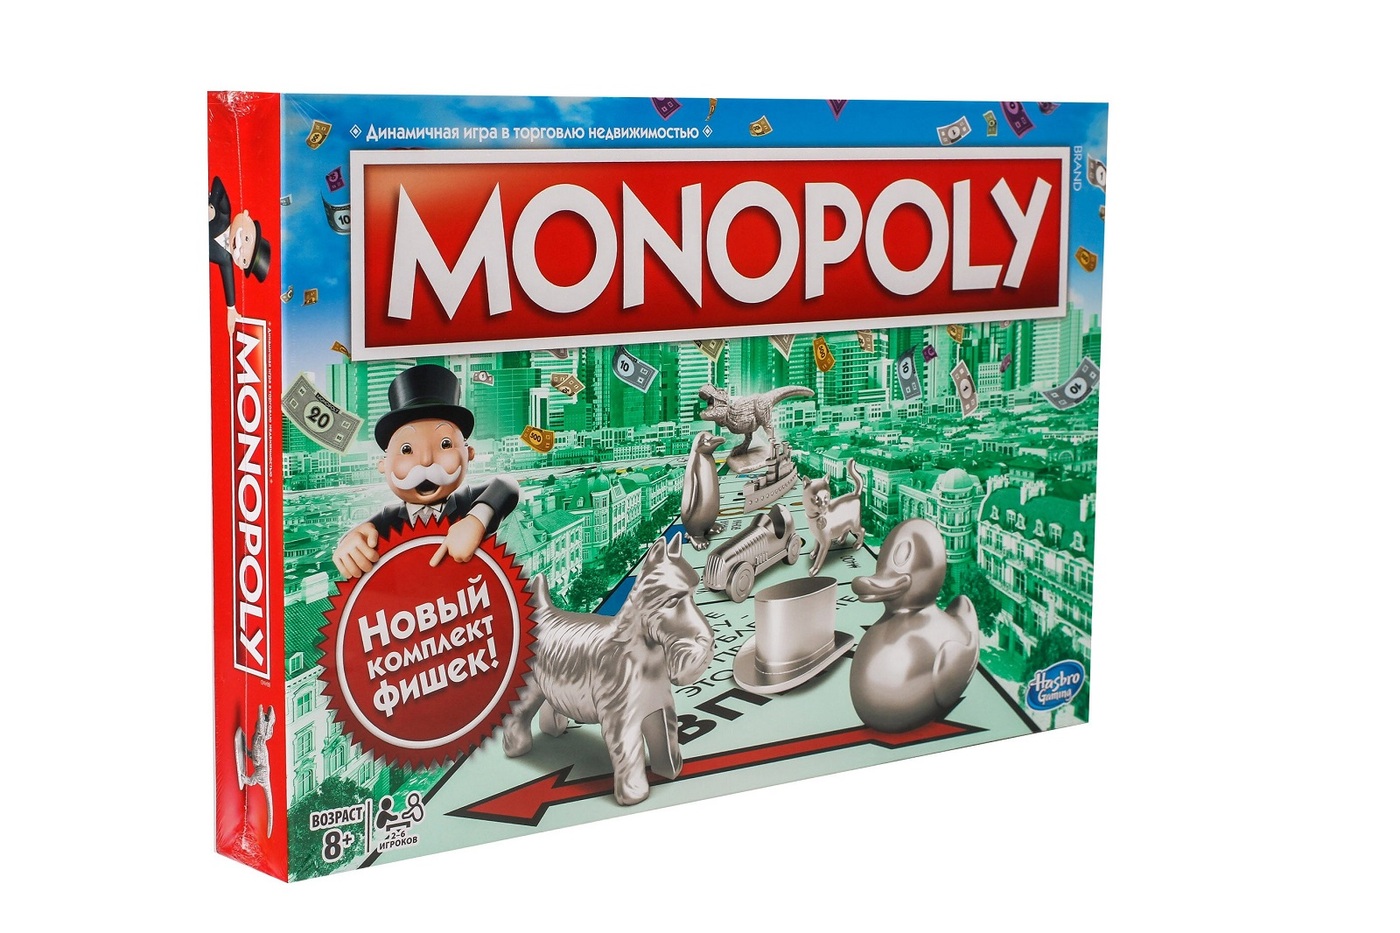 Монополия стратегия. Настольная игра Monopoly классическая обновленная c1009. Настольная игра Hasbro Monopoly. Монополия классическая Хасбро. Монополия классическая обновленная c1009121.